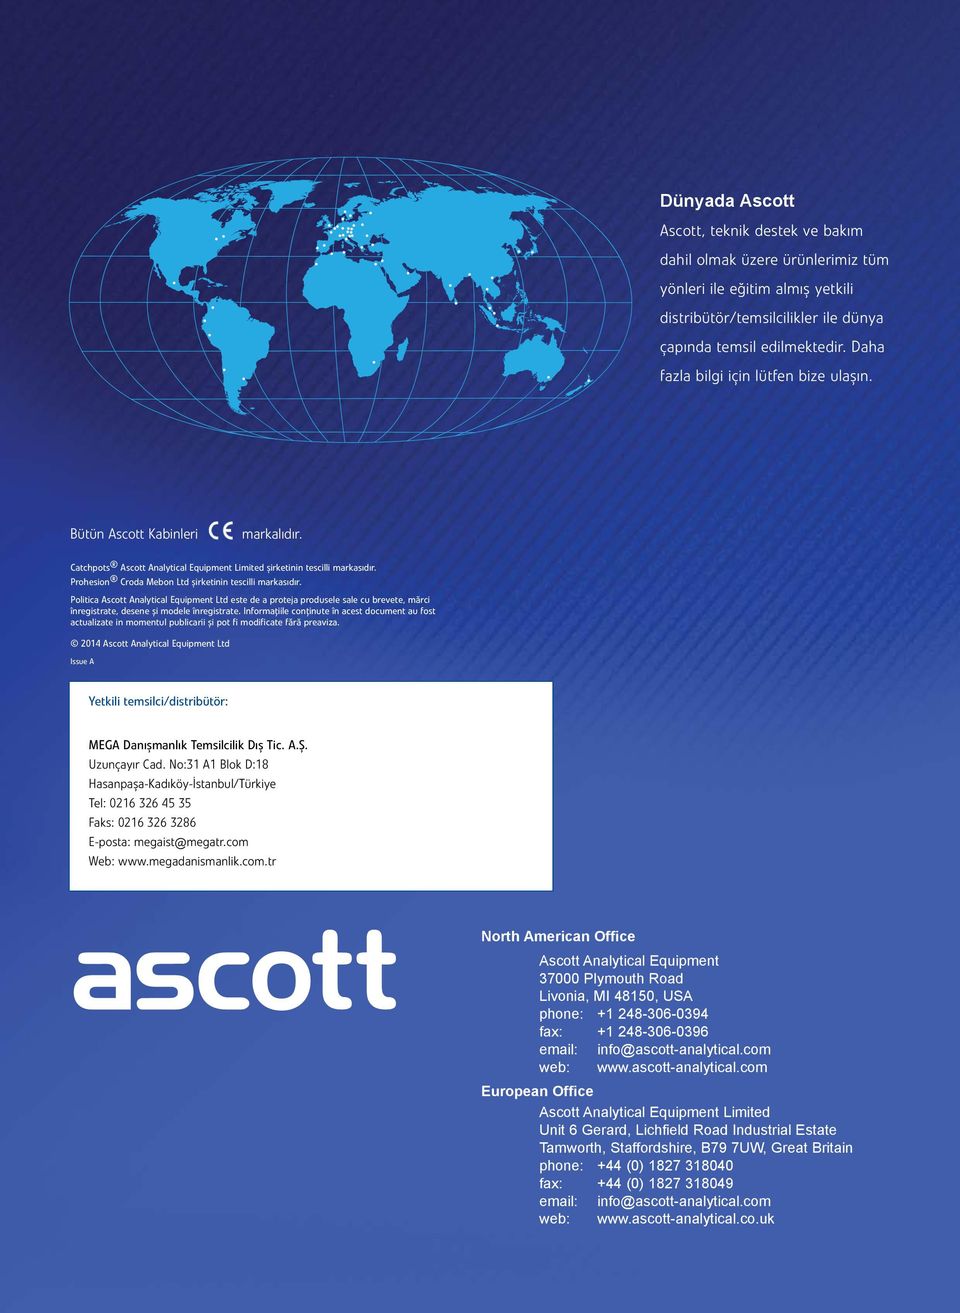 Prohesion Croda Mebon Ltd şirketinin tescilli markasıdır. Politica Ascott Analytical Equipment Ltd este de a proteja produsele sale cu brevete, mărci înregistrate, desene și modele înregistrate.